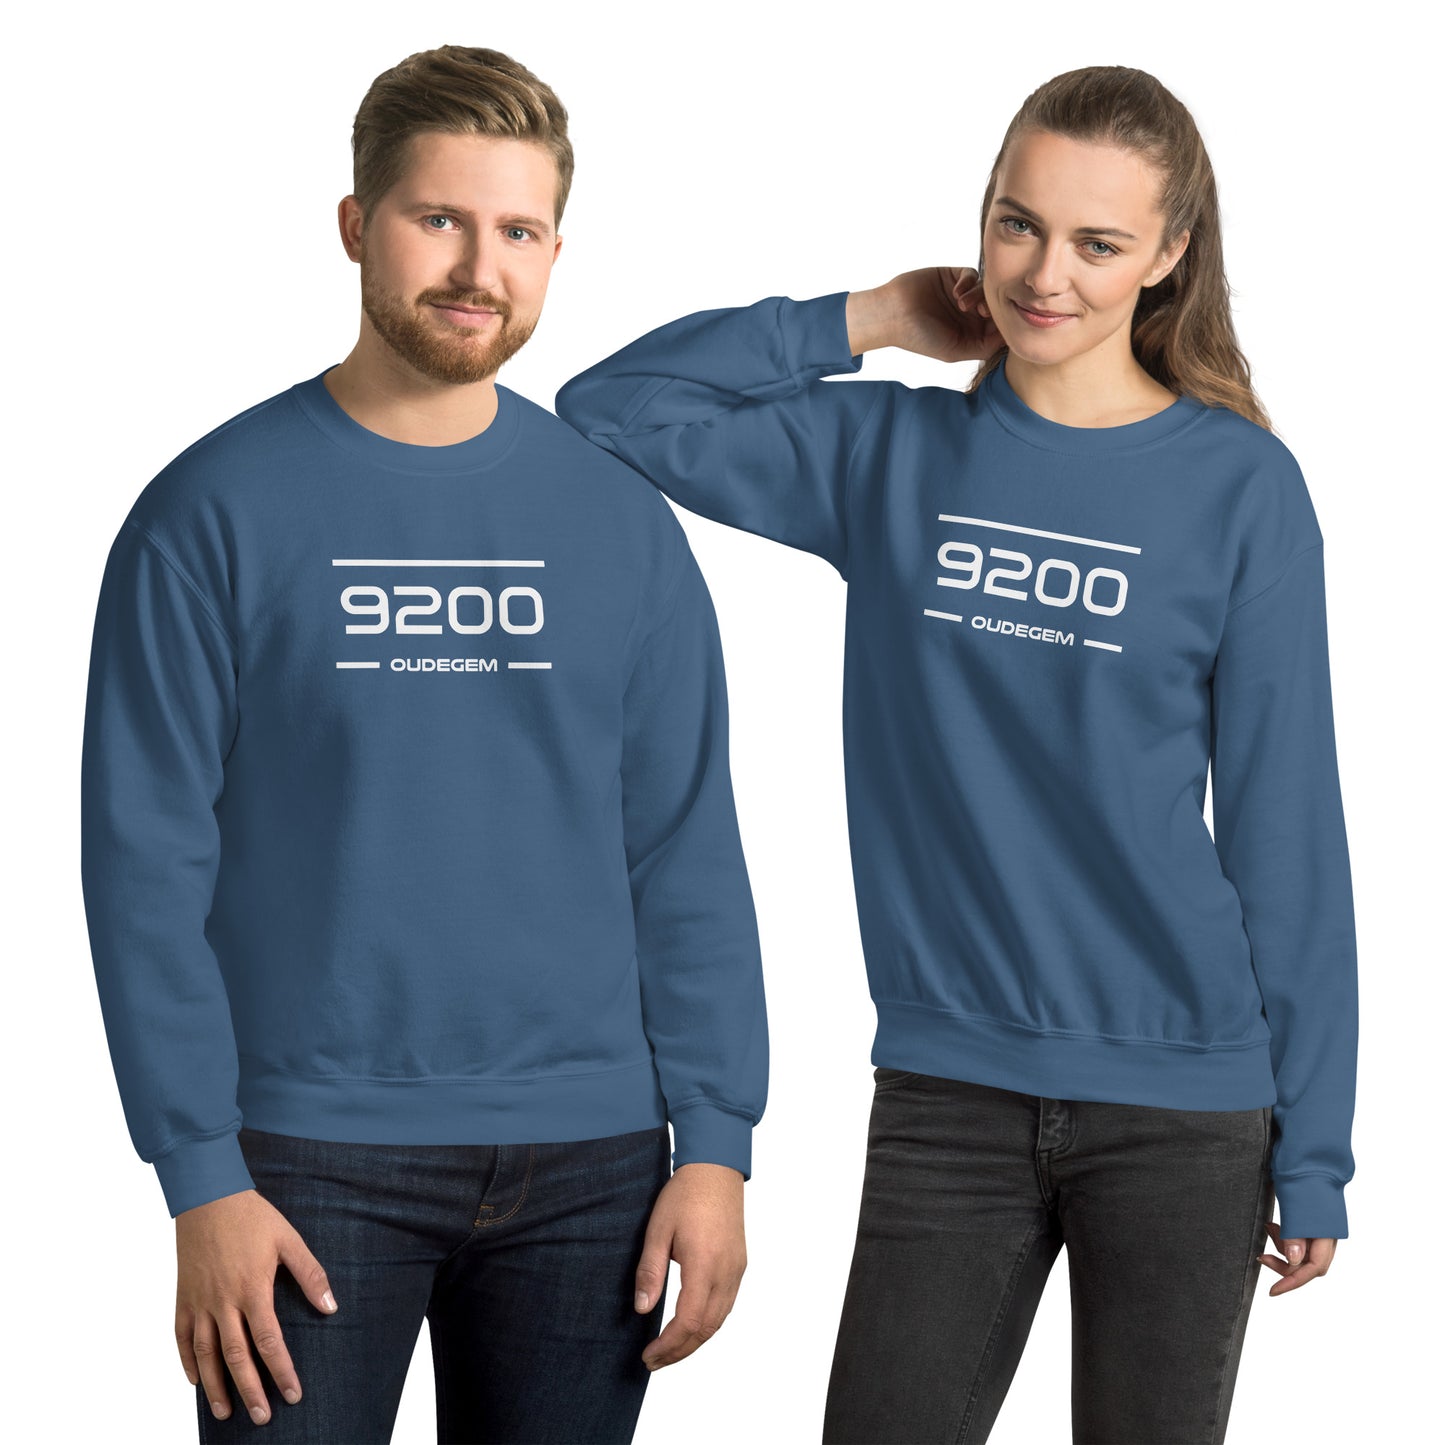 Sweater - 9200 - Oudegem (M/V)